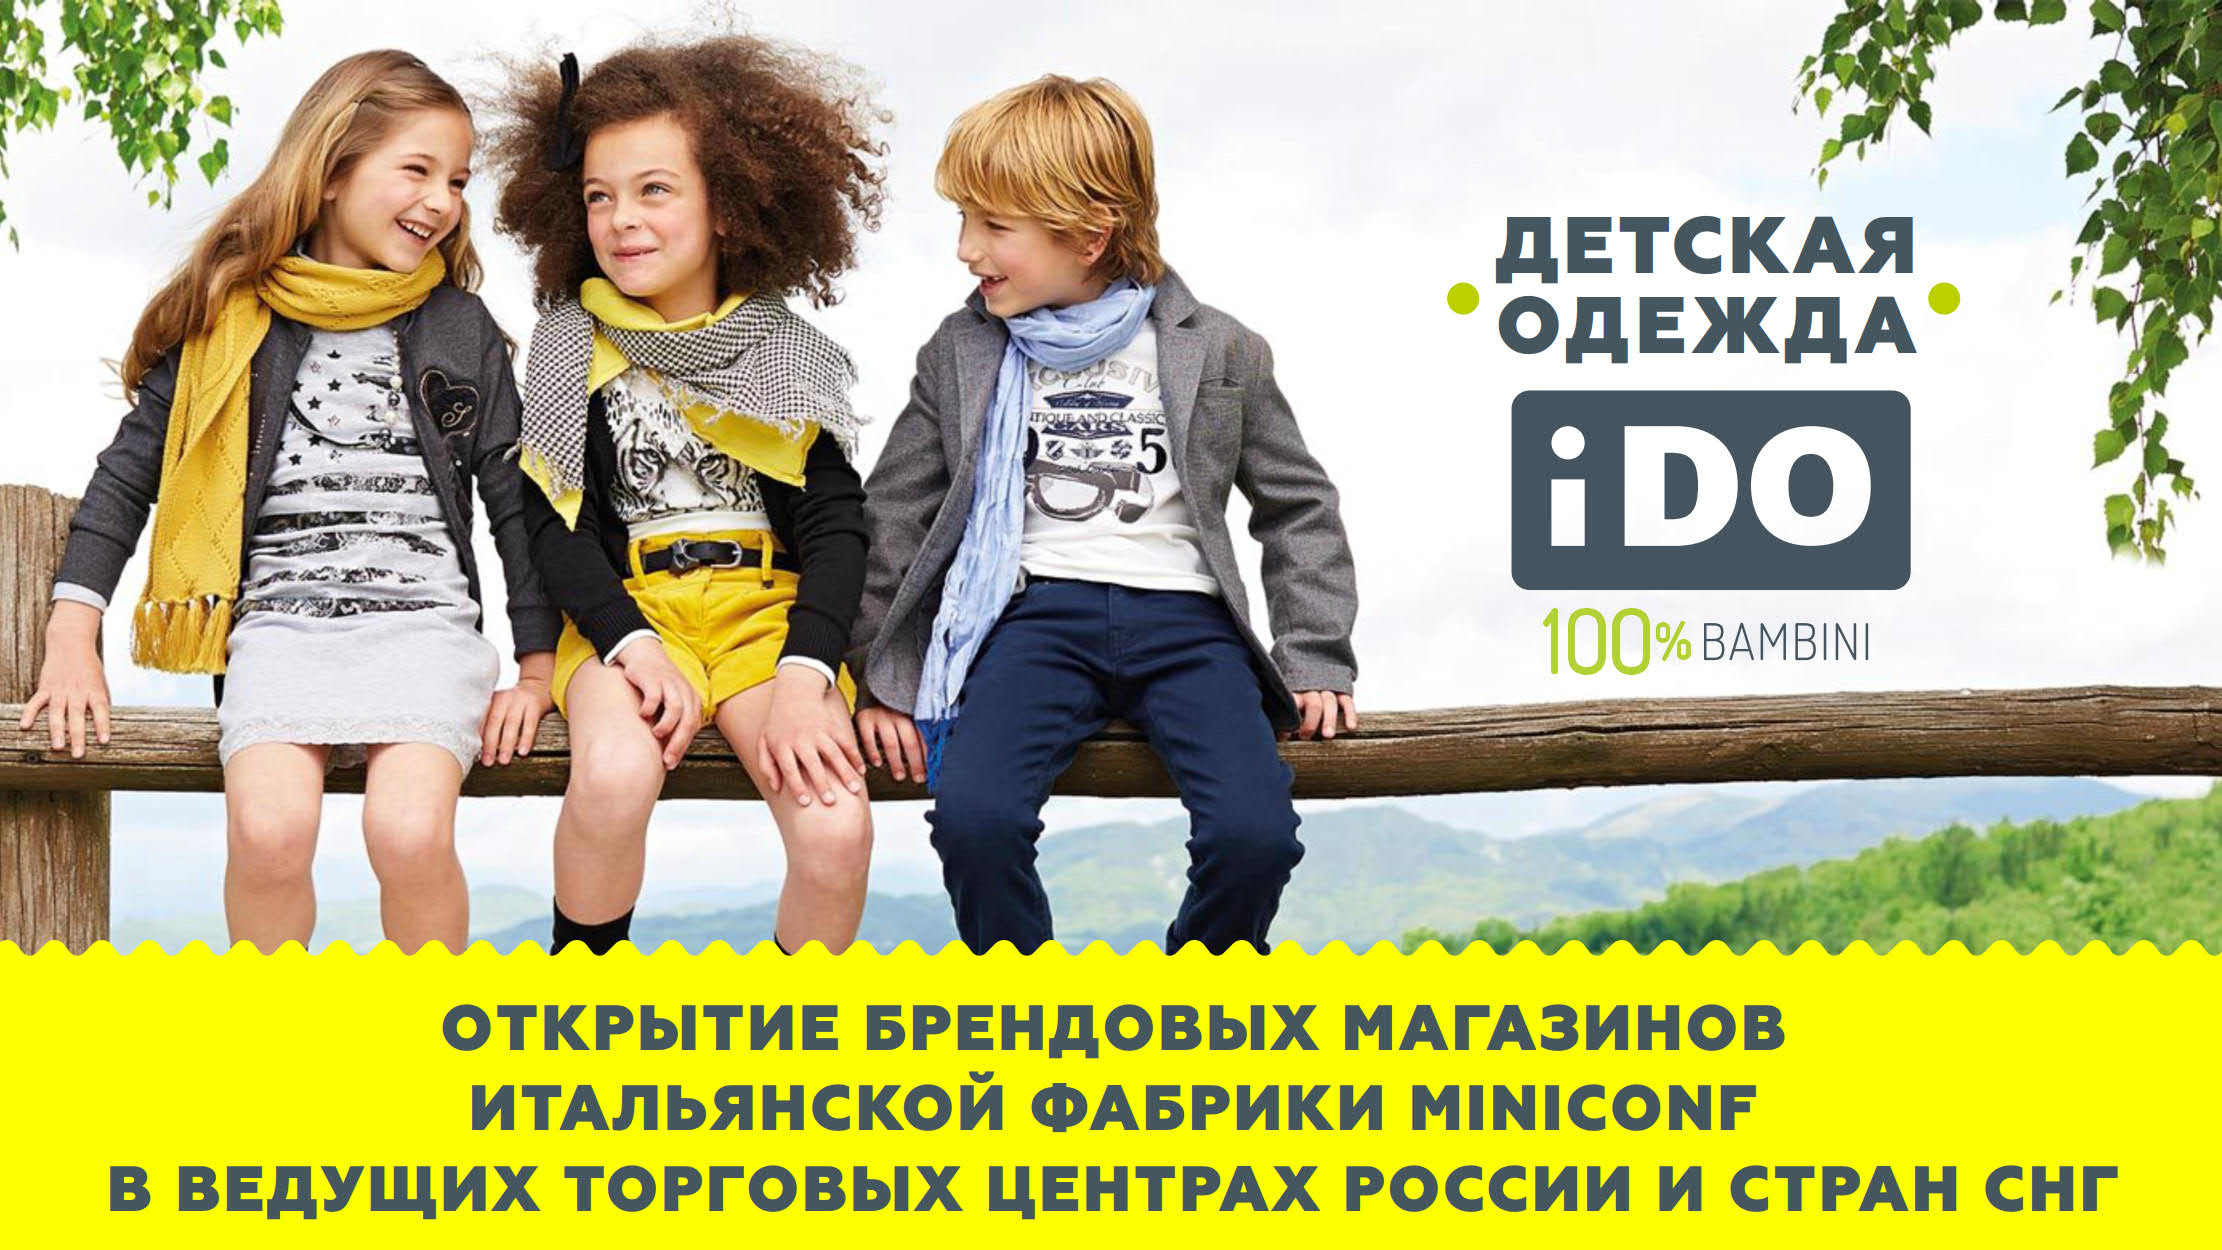 Презентация магазинов детской одежды iDO для ТЦ слайд 1